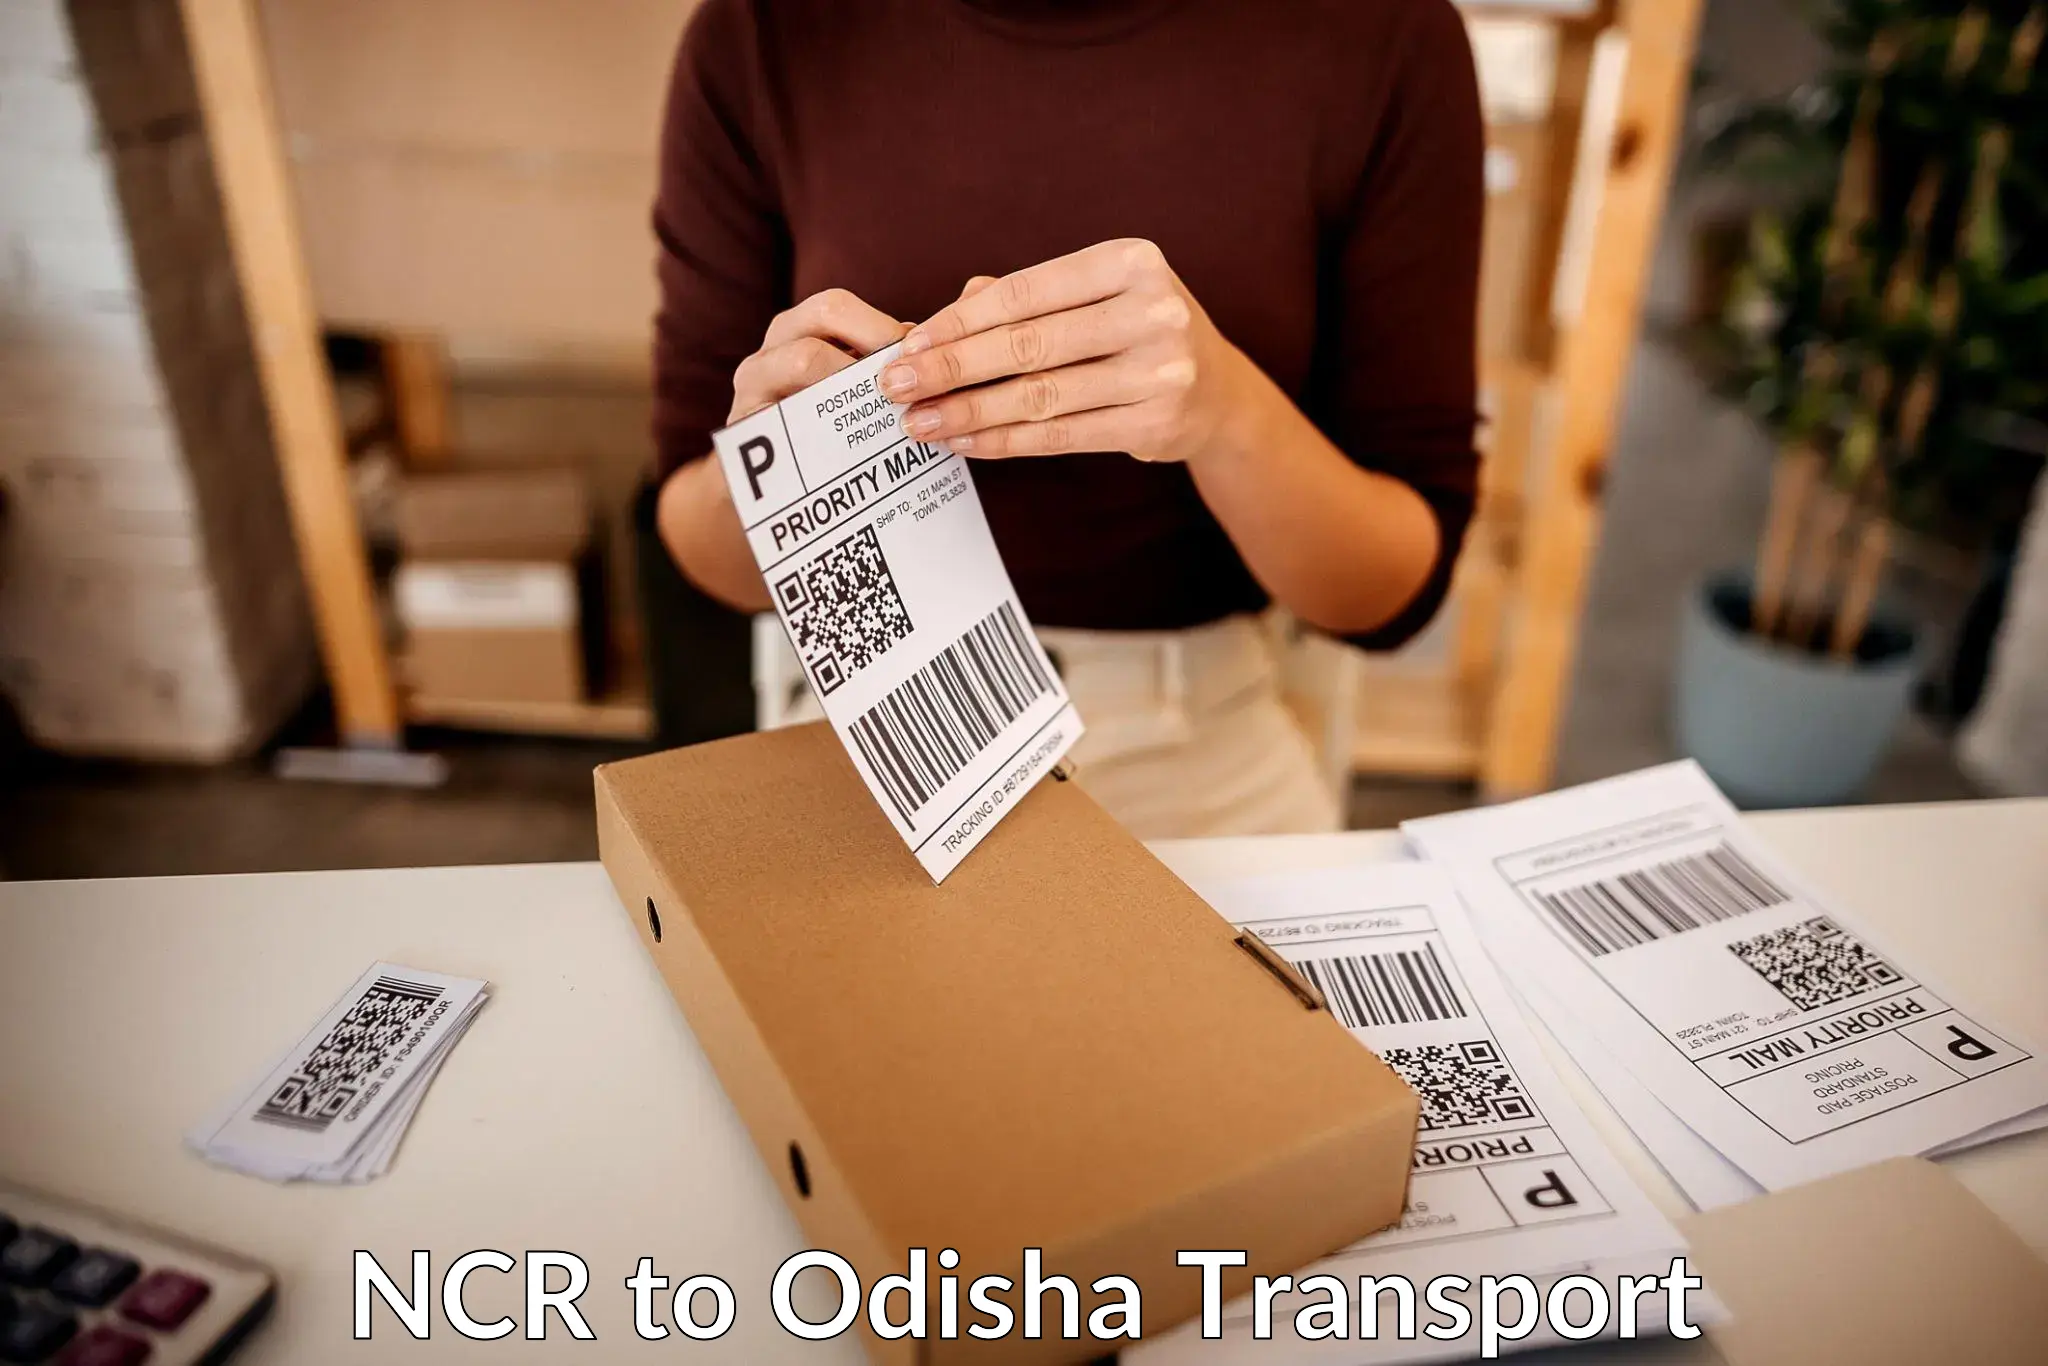 Transport in sharing NCR to Polasara